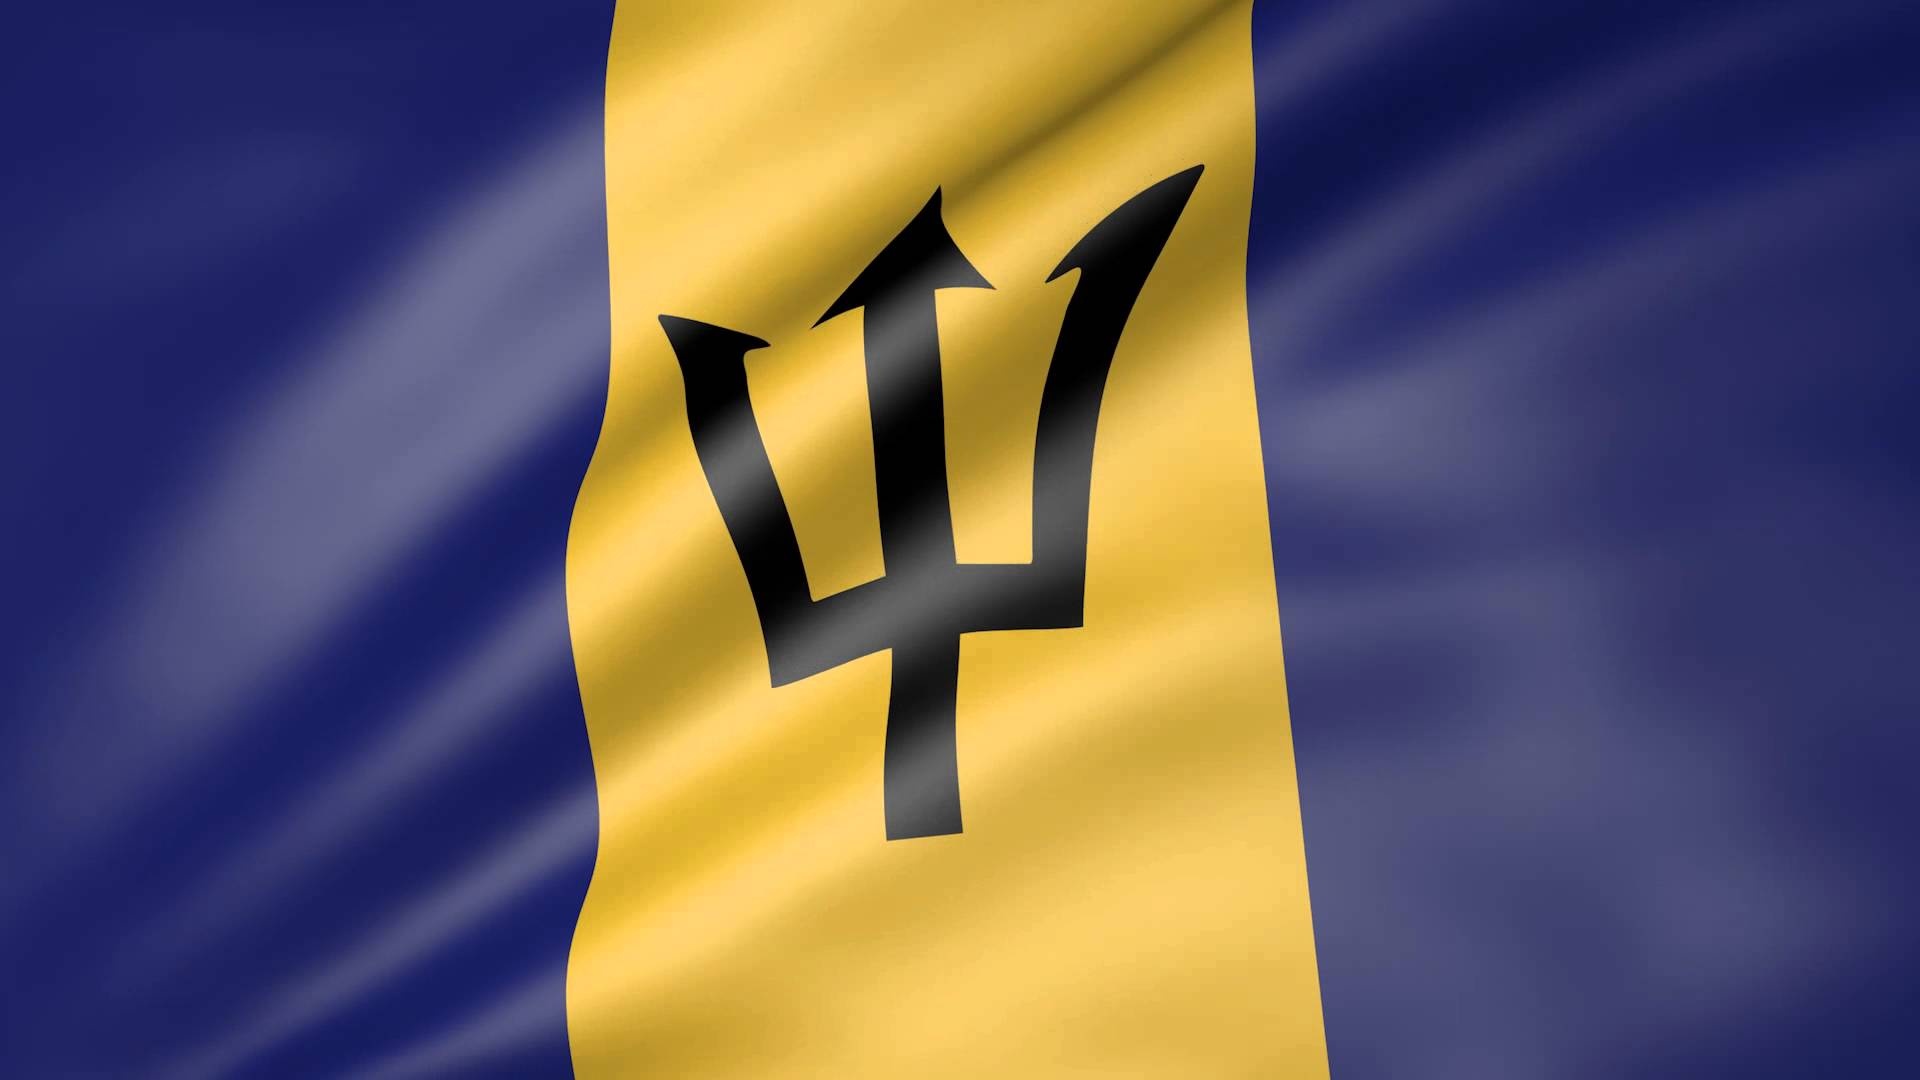 Барбадос флаг. Флаг Барбадоса. Барбадос экономика. Barbados флаг jpeg. Экономика Барбадоса картинки.